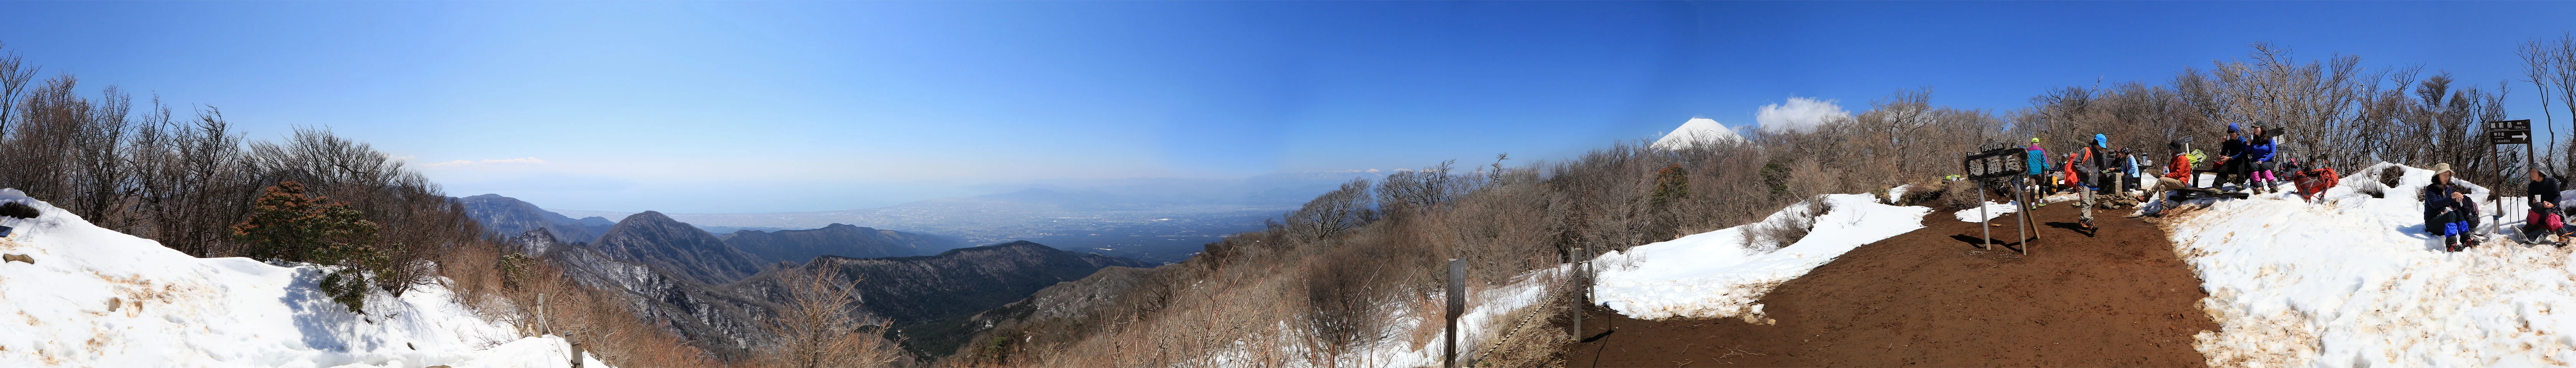 愛鷹山の越前岳からのパノラマ写真